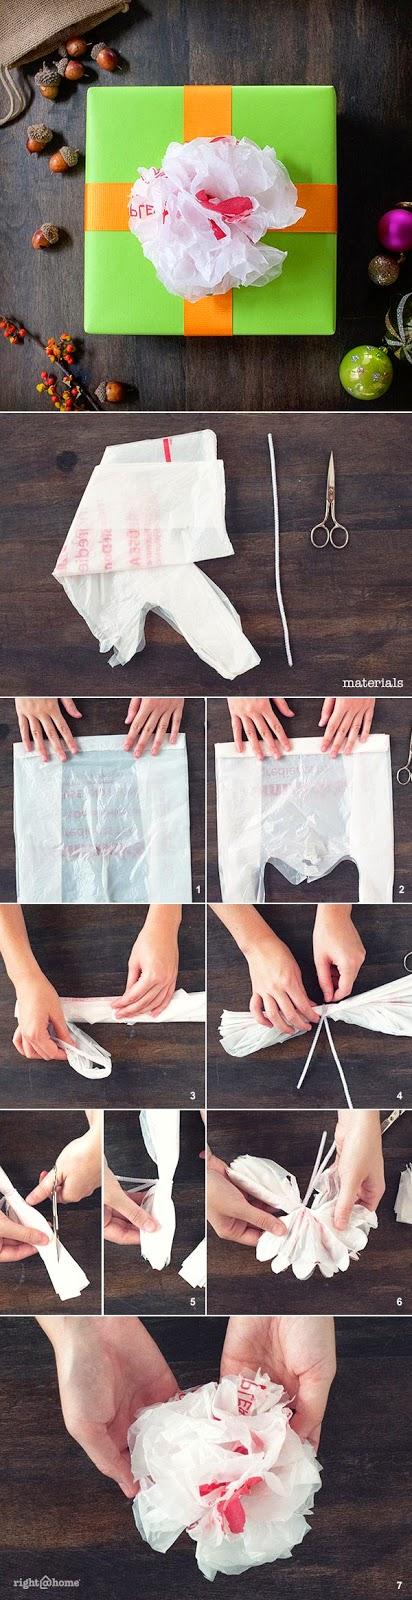 Come riciclare i sacchetti di plastica - Riciclo buste